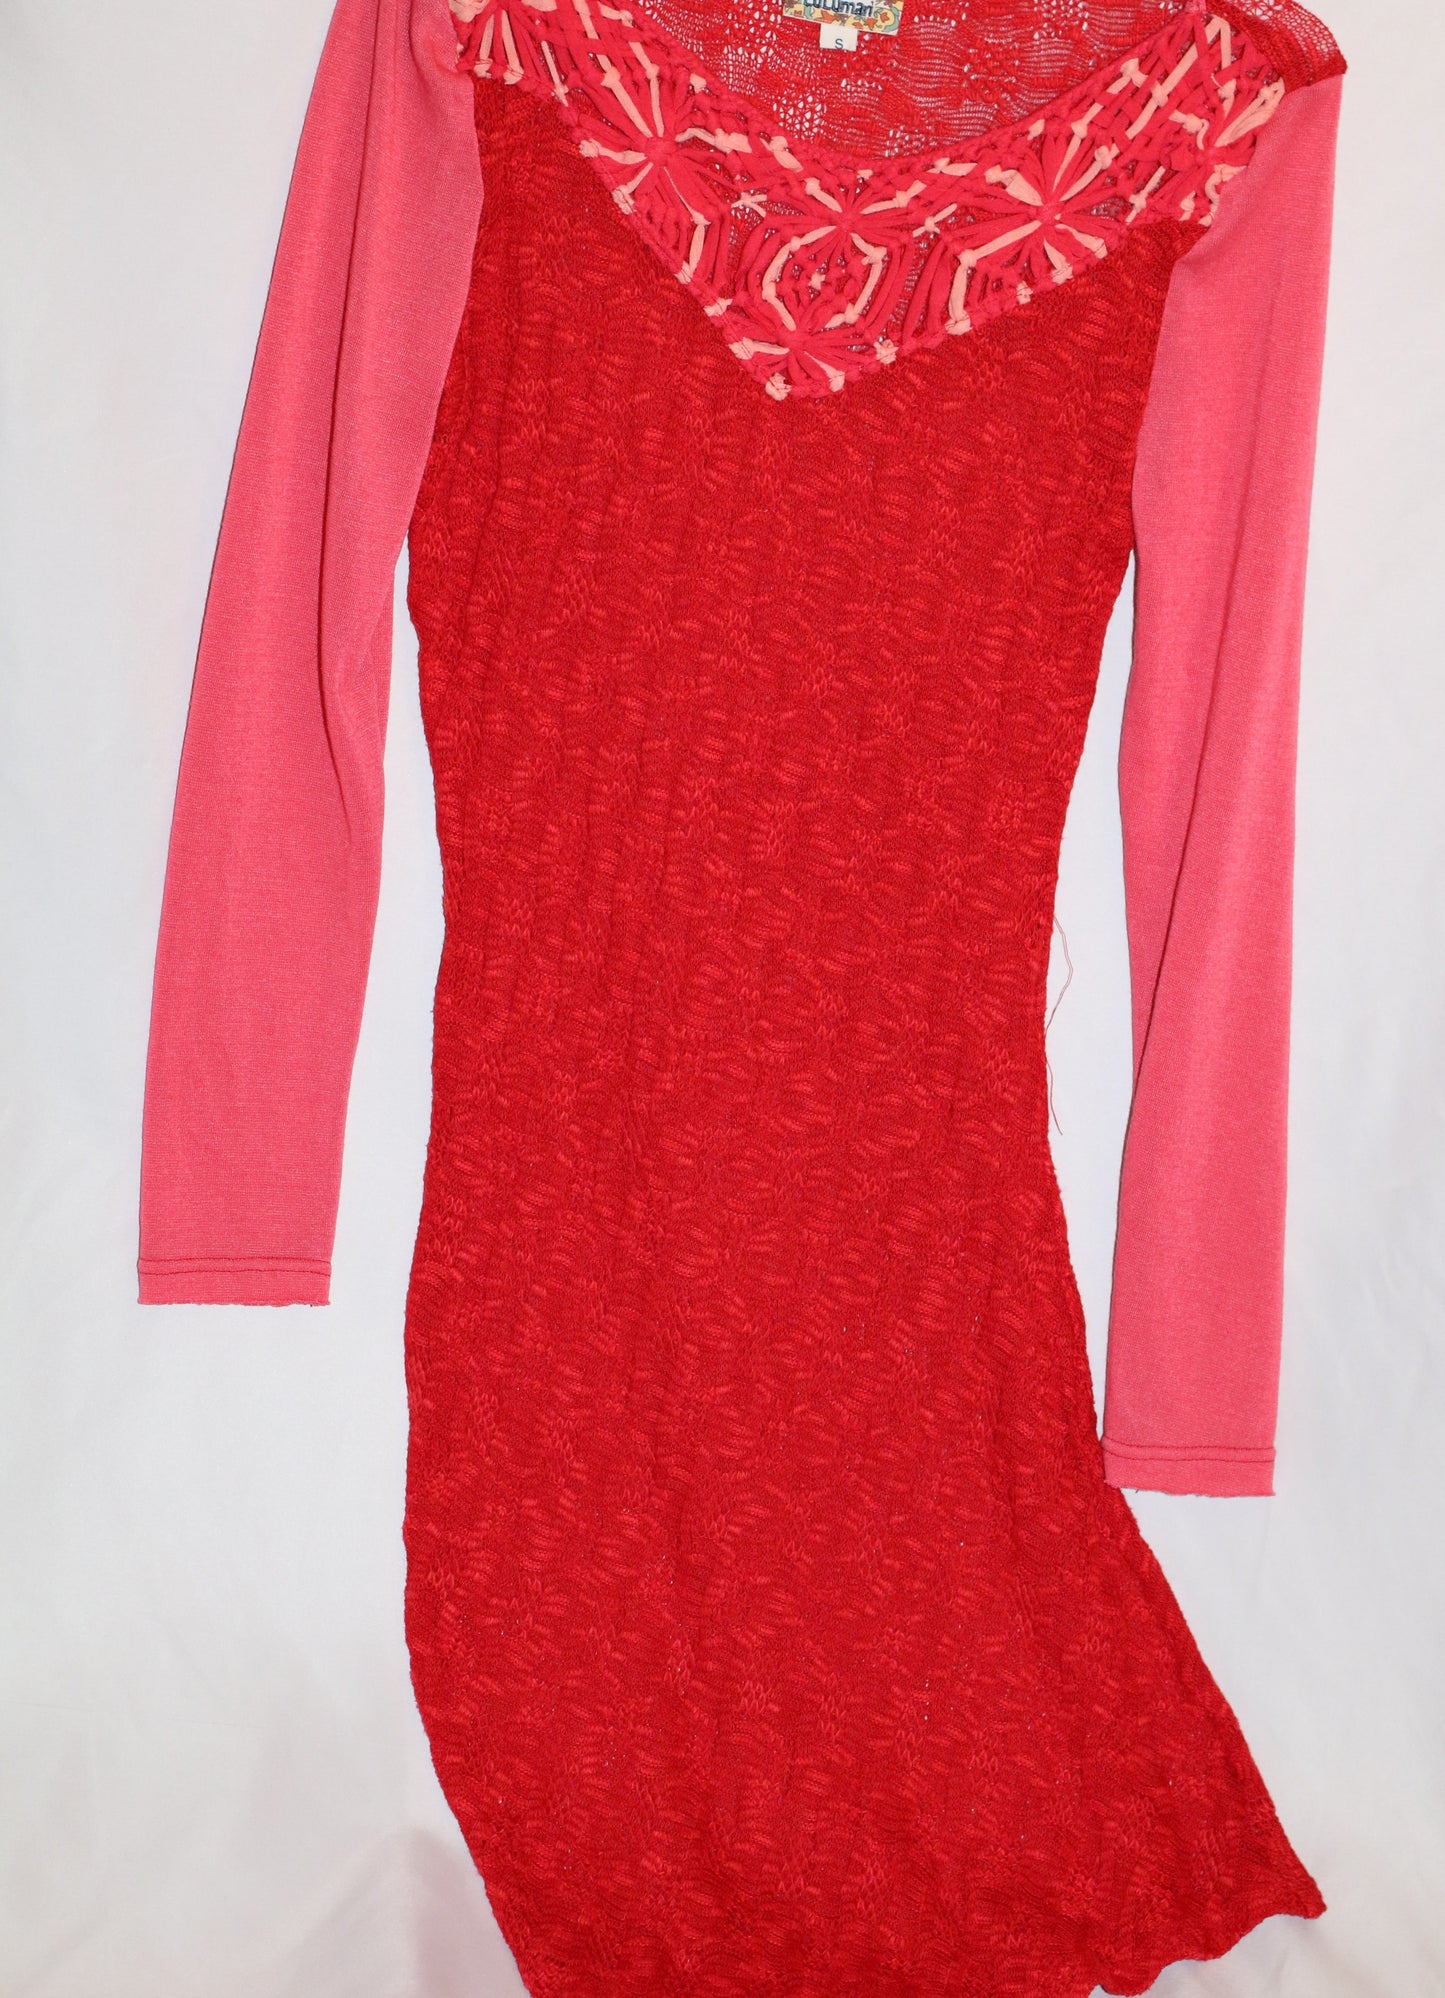 Red Yarn Dress